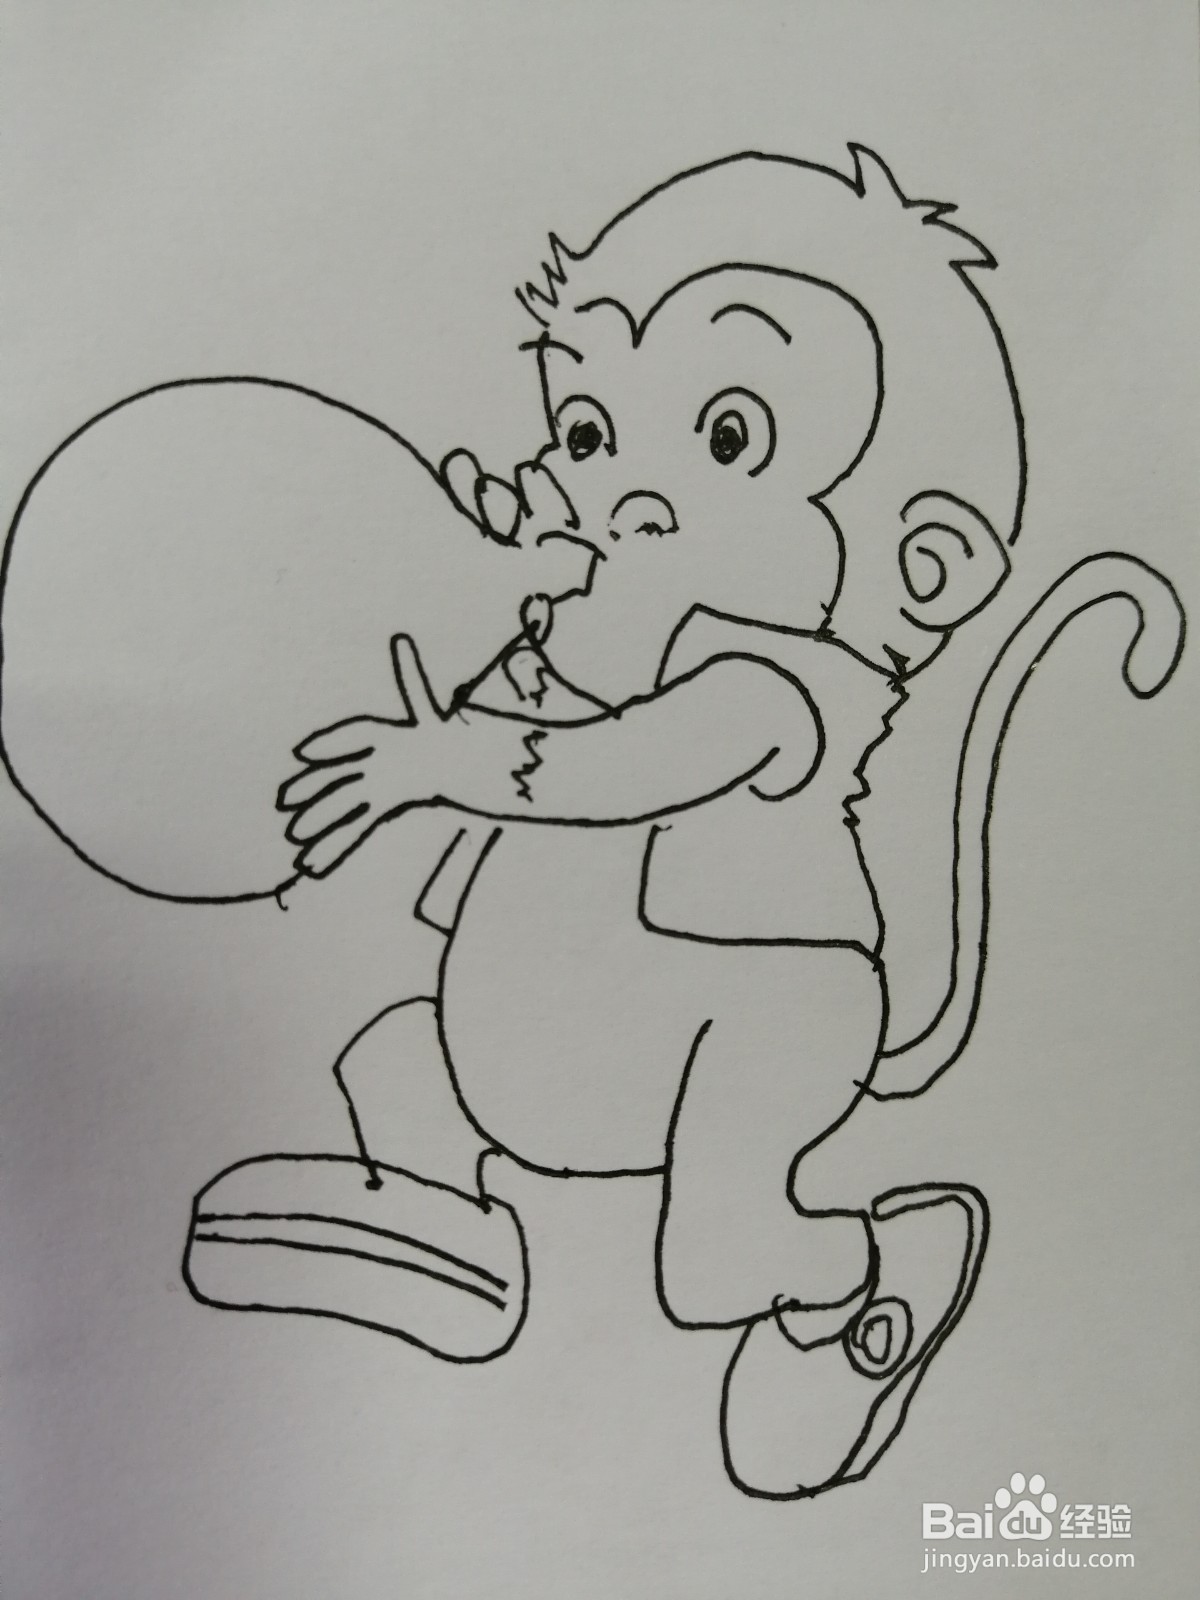 <b>吹气球的小猴子怎么画</b>